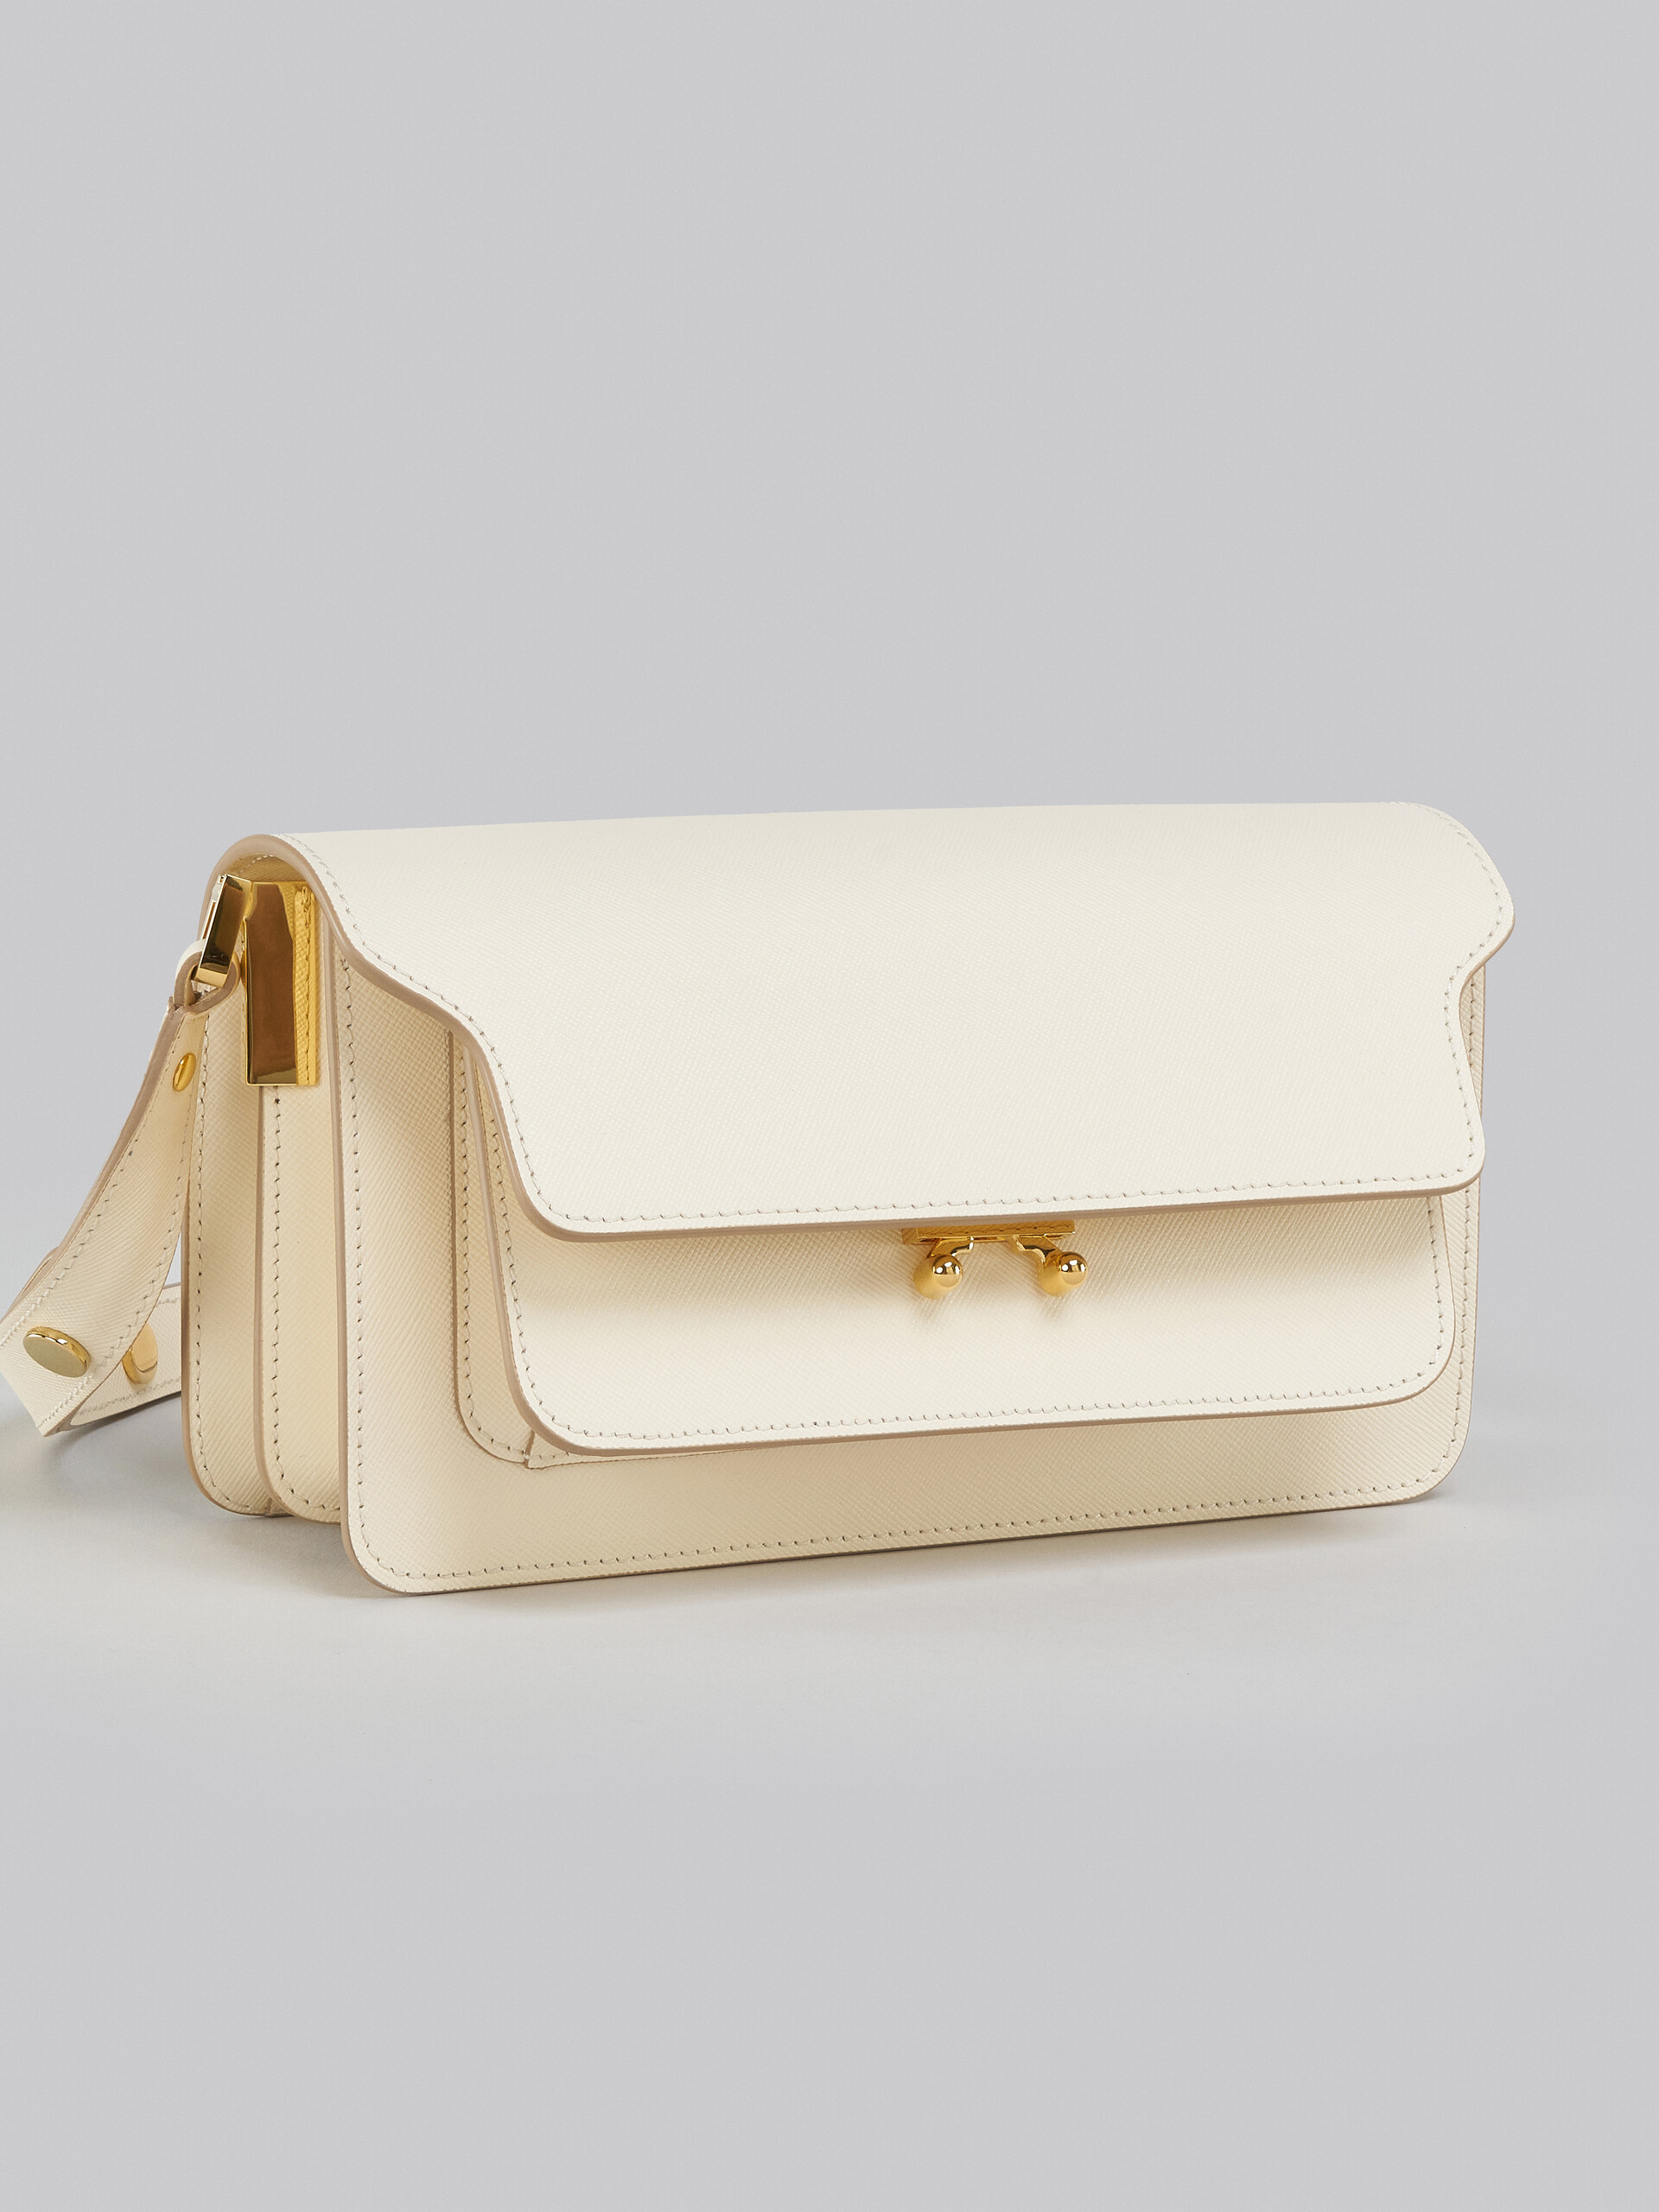 Sac Trunk horizontal en cuir Saffiano blanc - Sacs portés épaule - Image 5